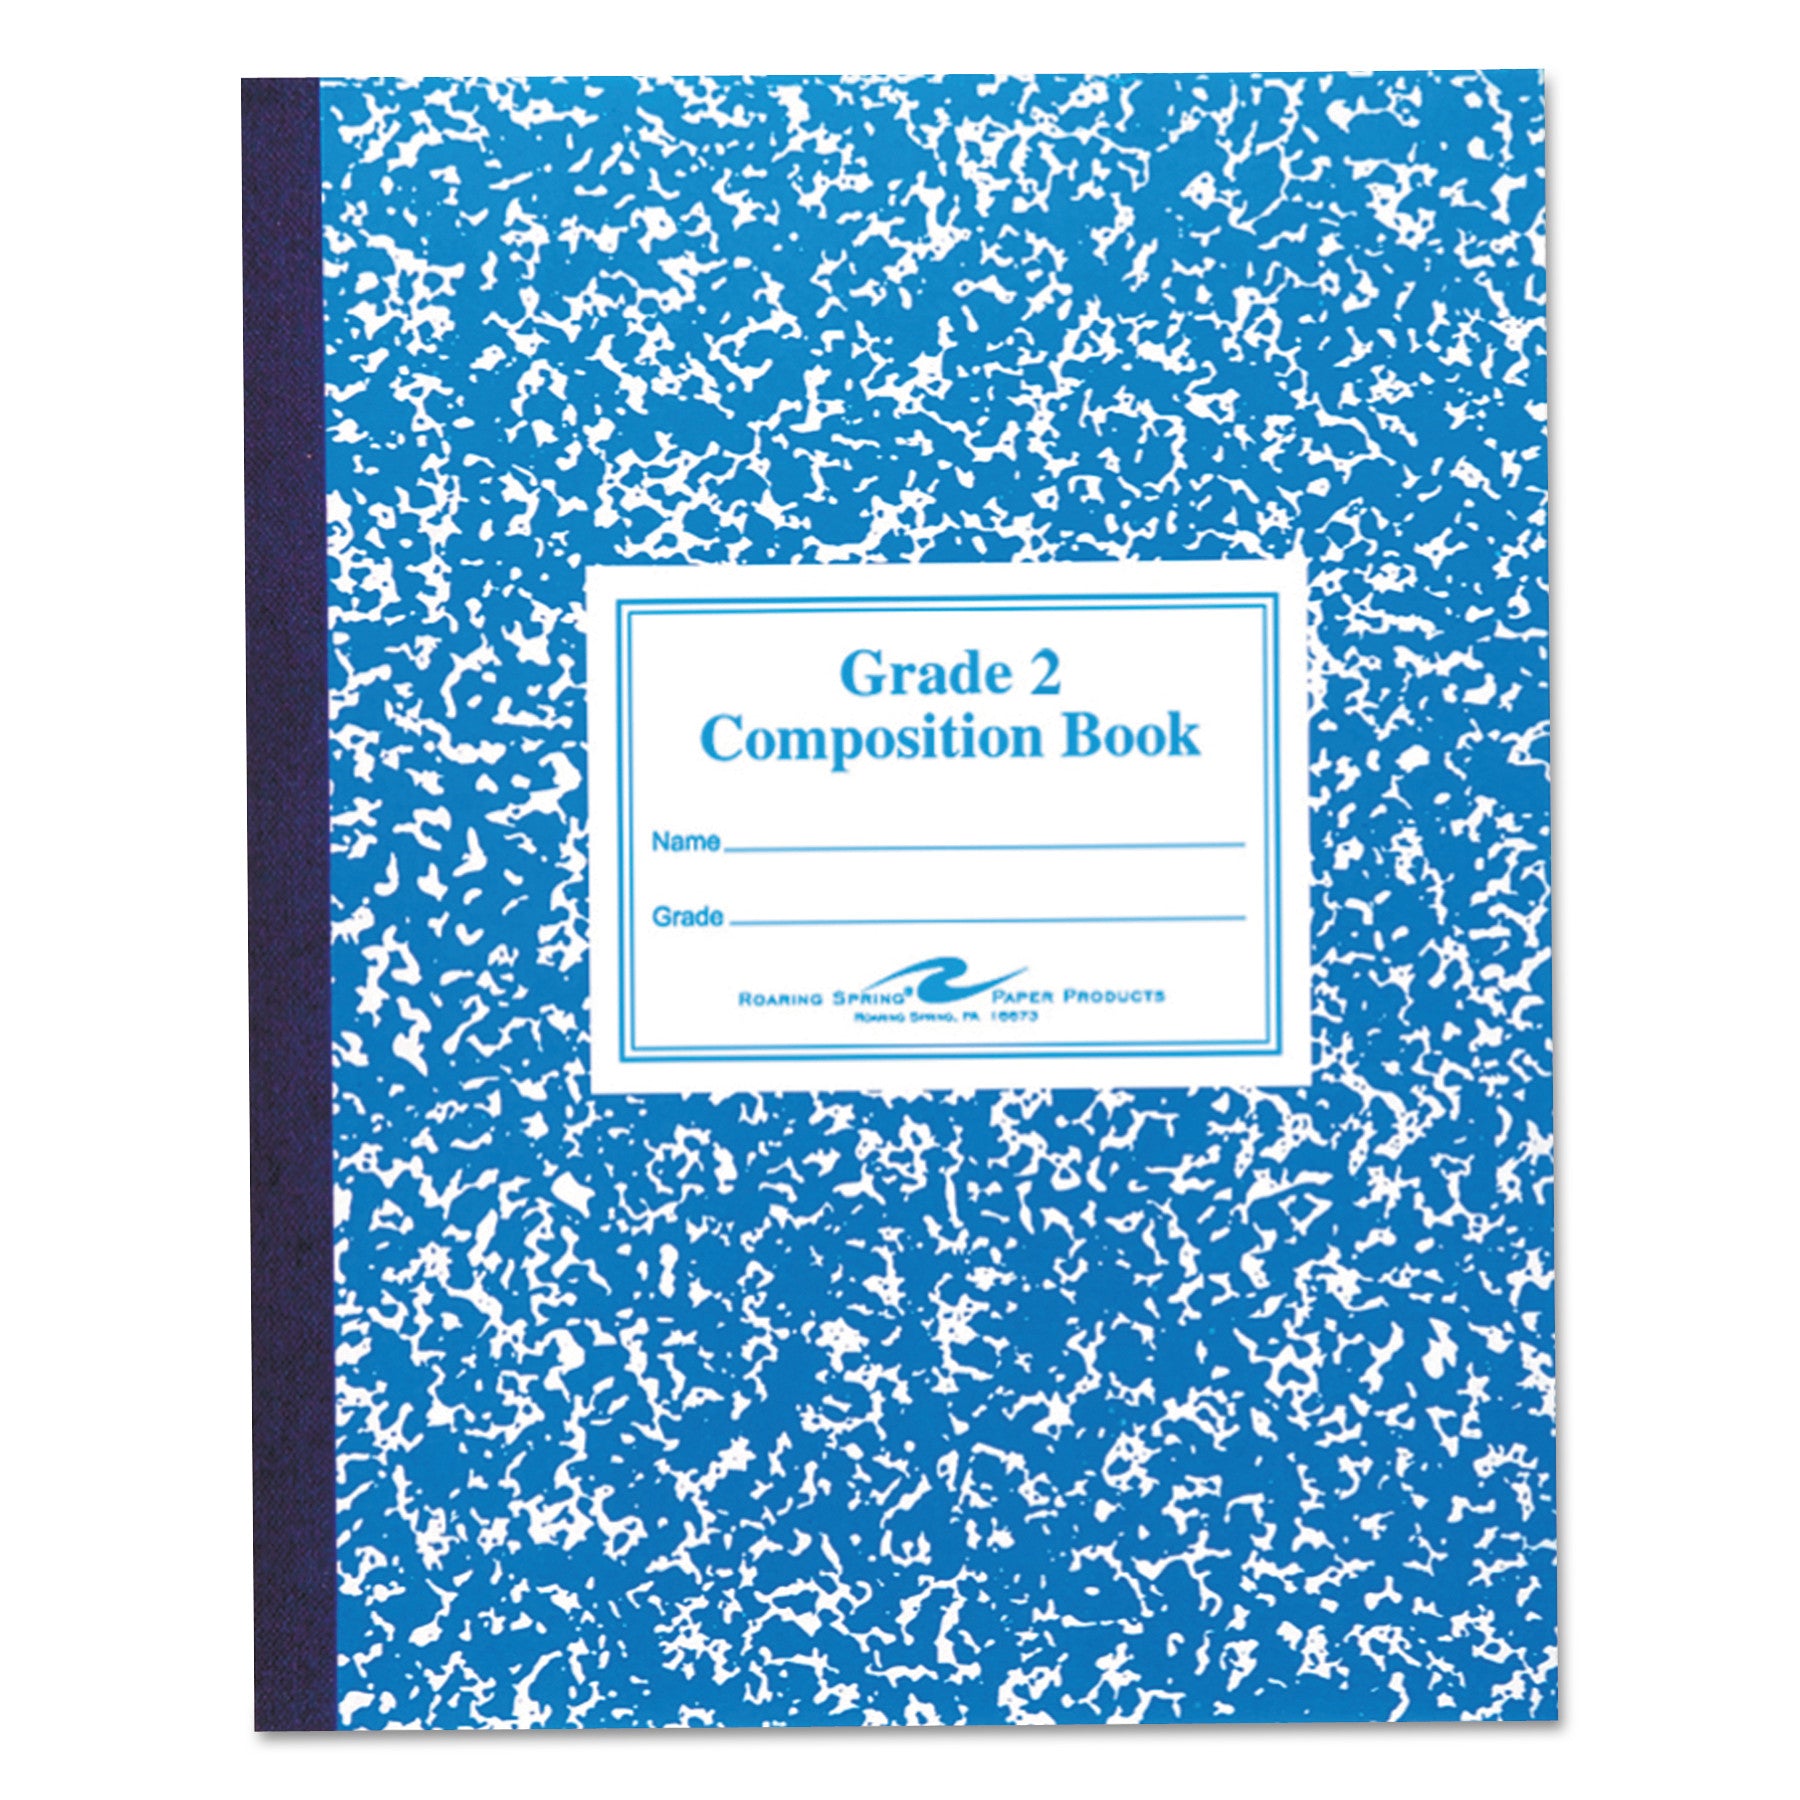 Grade School Ruled Composition Book, Grade 2 Manuscript Format, Blue Cover, (50) 9.75 x 7.75 Sheets - 